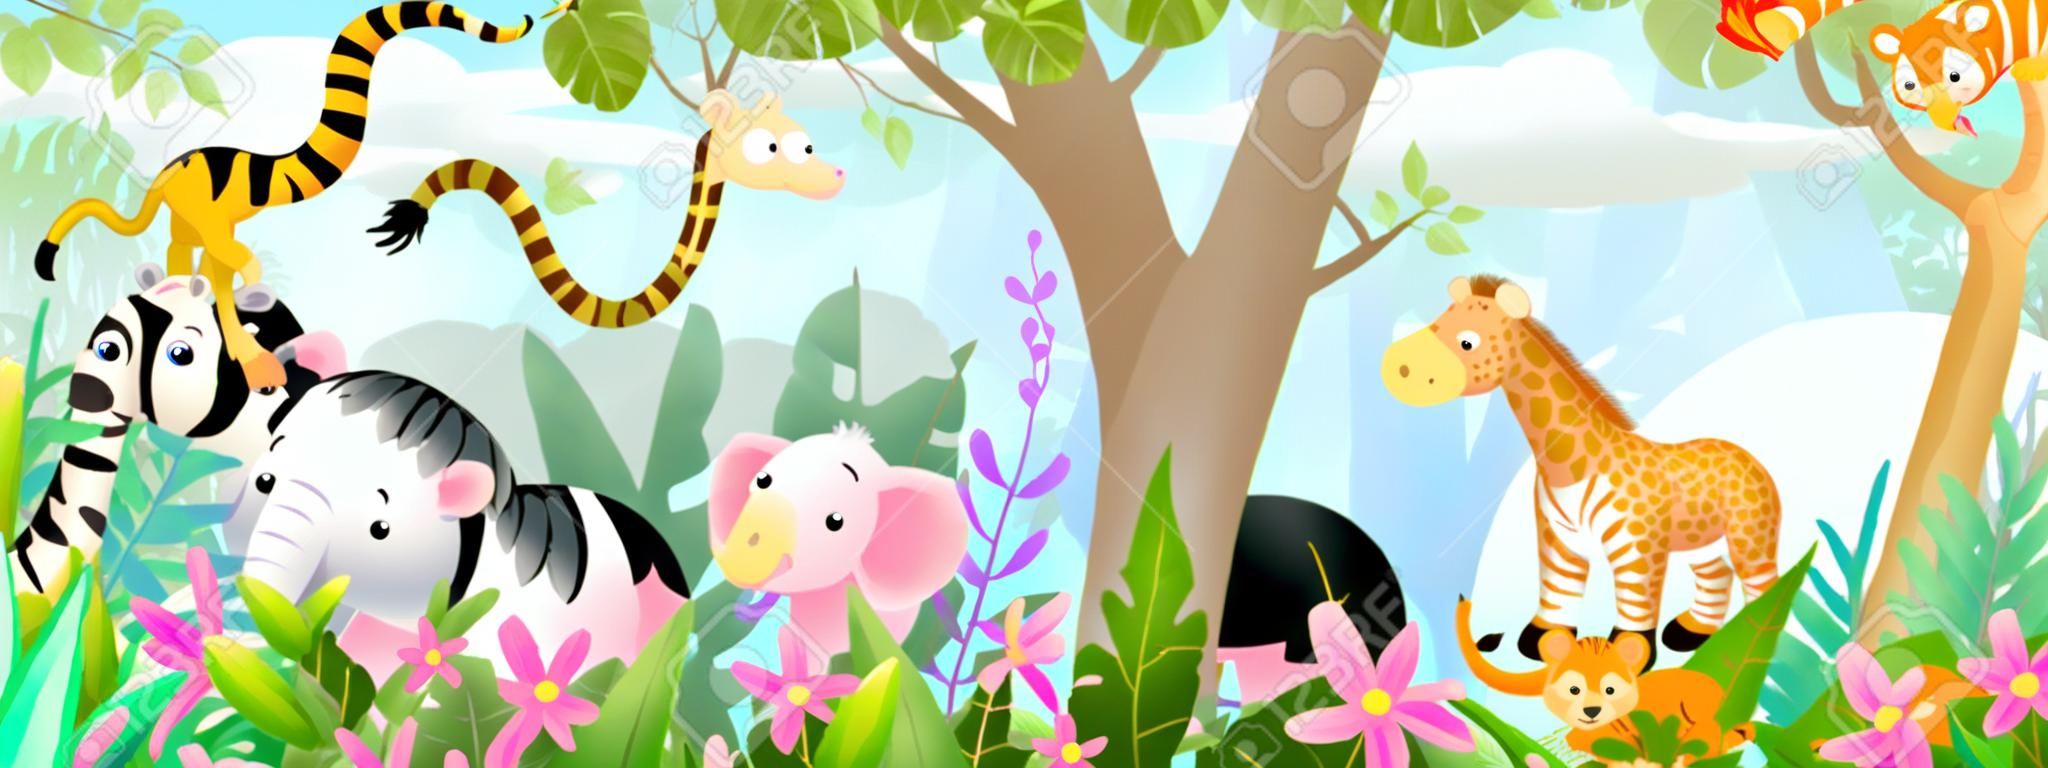 Animali per bambini nella giungla amici carini nella foresta tropicale selvaggia. Molti adorabili animali da safari o da zoo in natura. Panorama orizzontale per bambini e bambini, illustrazione di arte vettoriale.